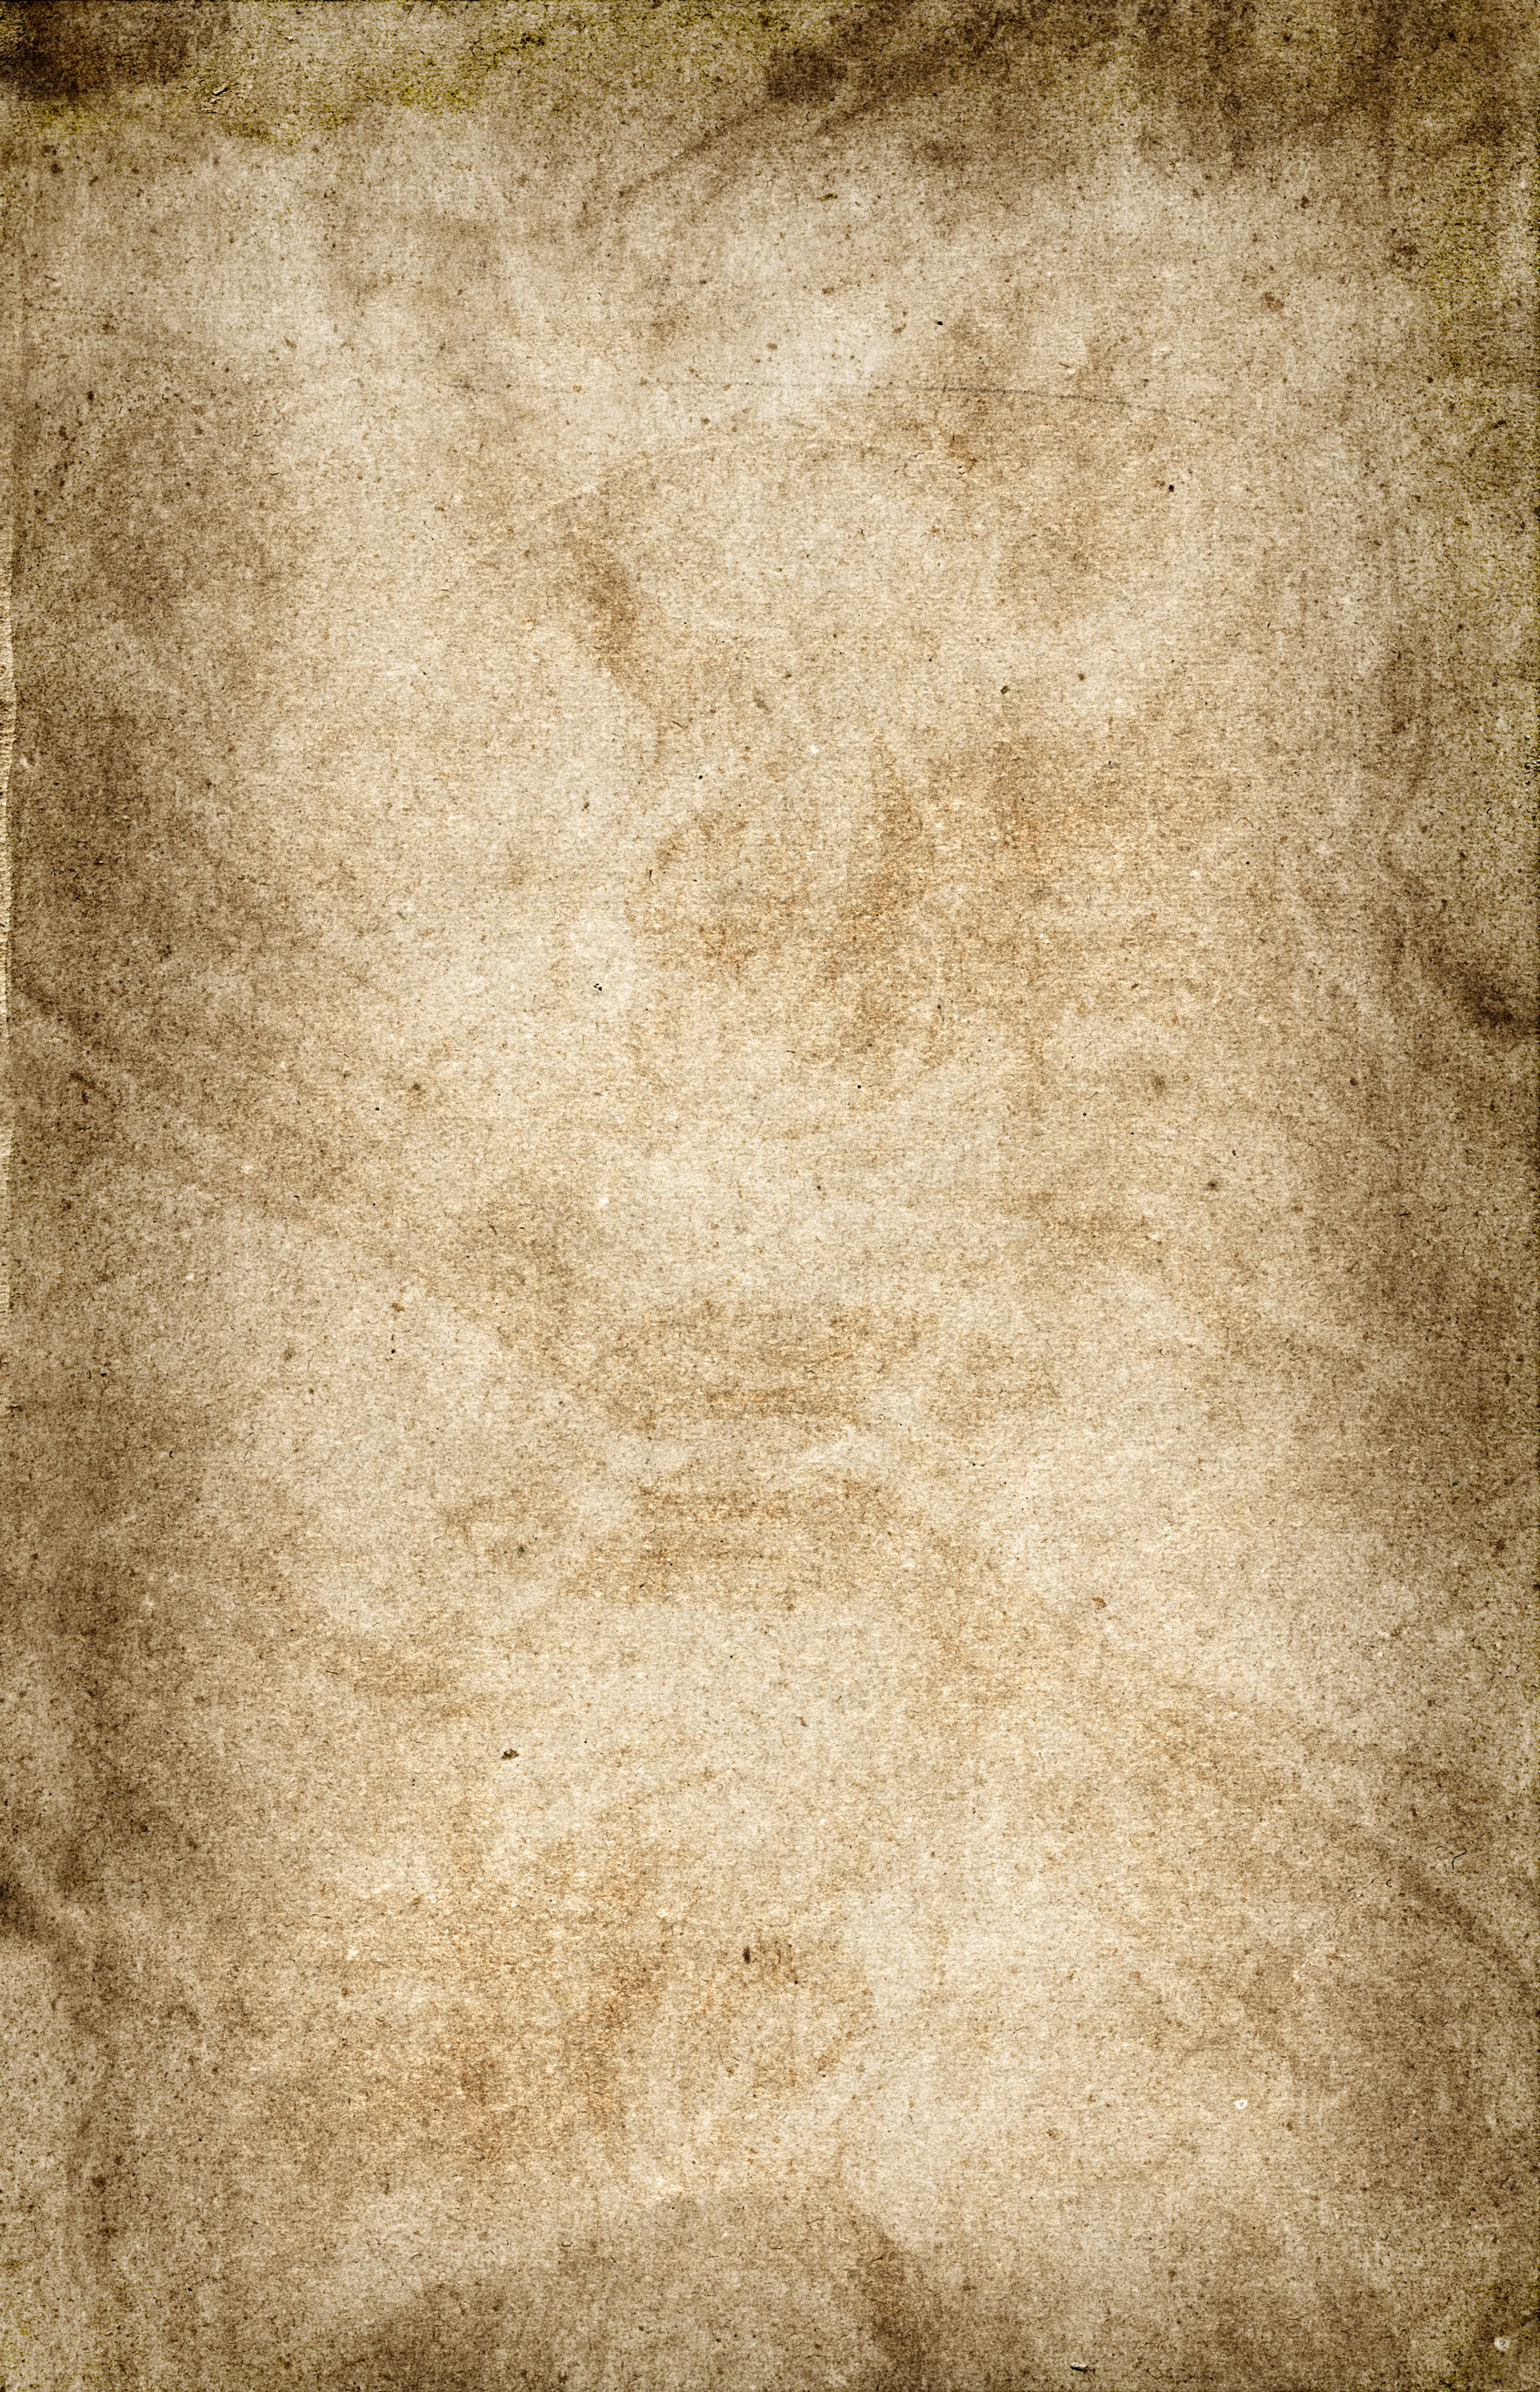 грязный лист бумаги, текстура, скачать фон, background